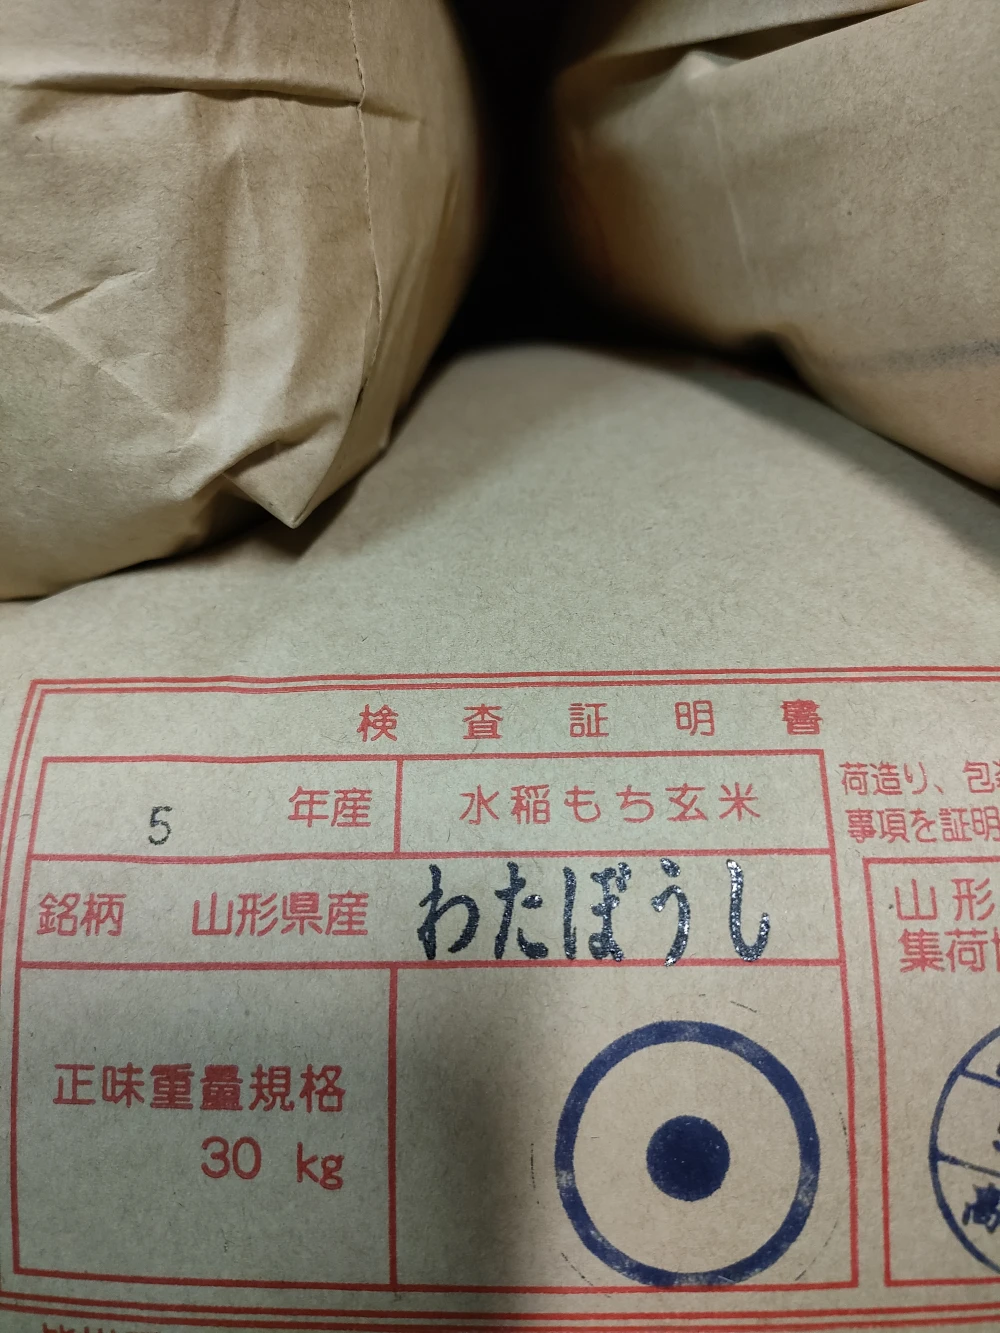 令和三年産 餅米 マンゲツモチ 玄米 30キロ - 米